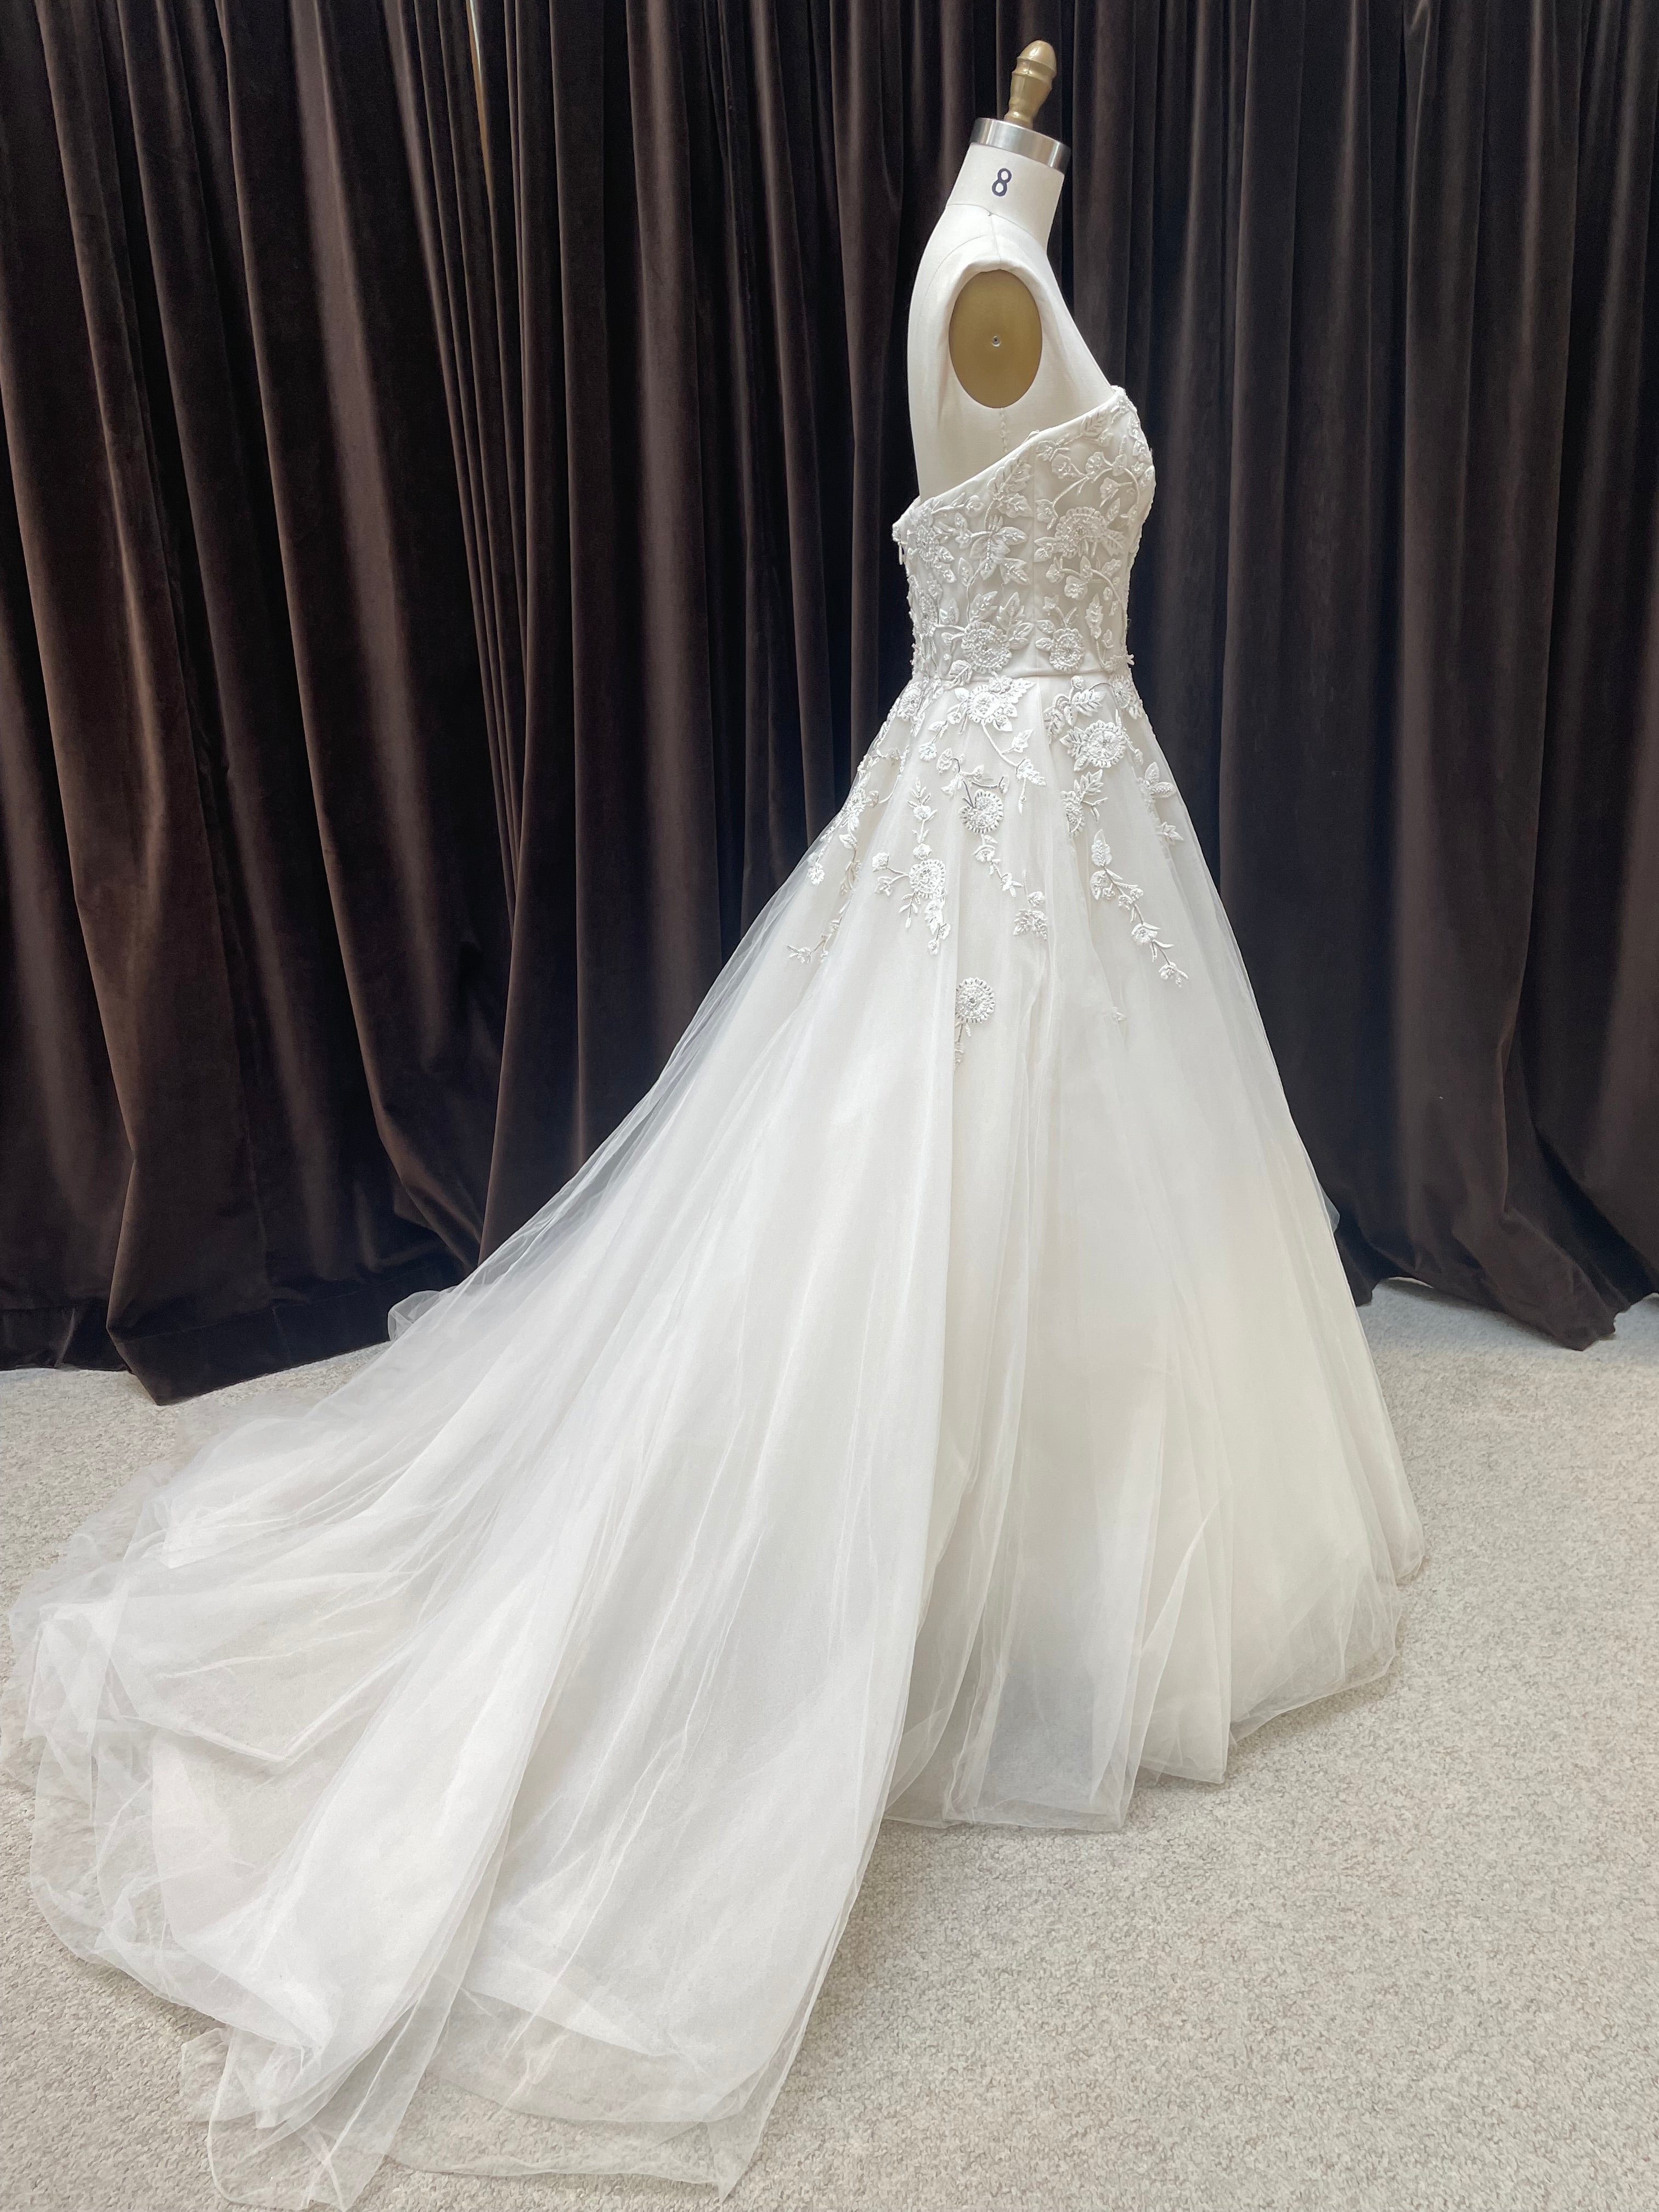 GC#35321 - Allison Webb CeCe Wedding Dress in Size 10